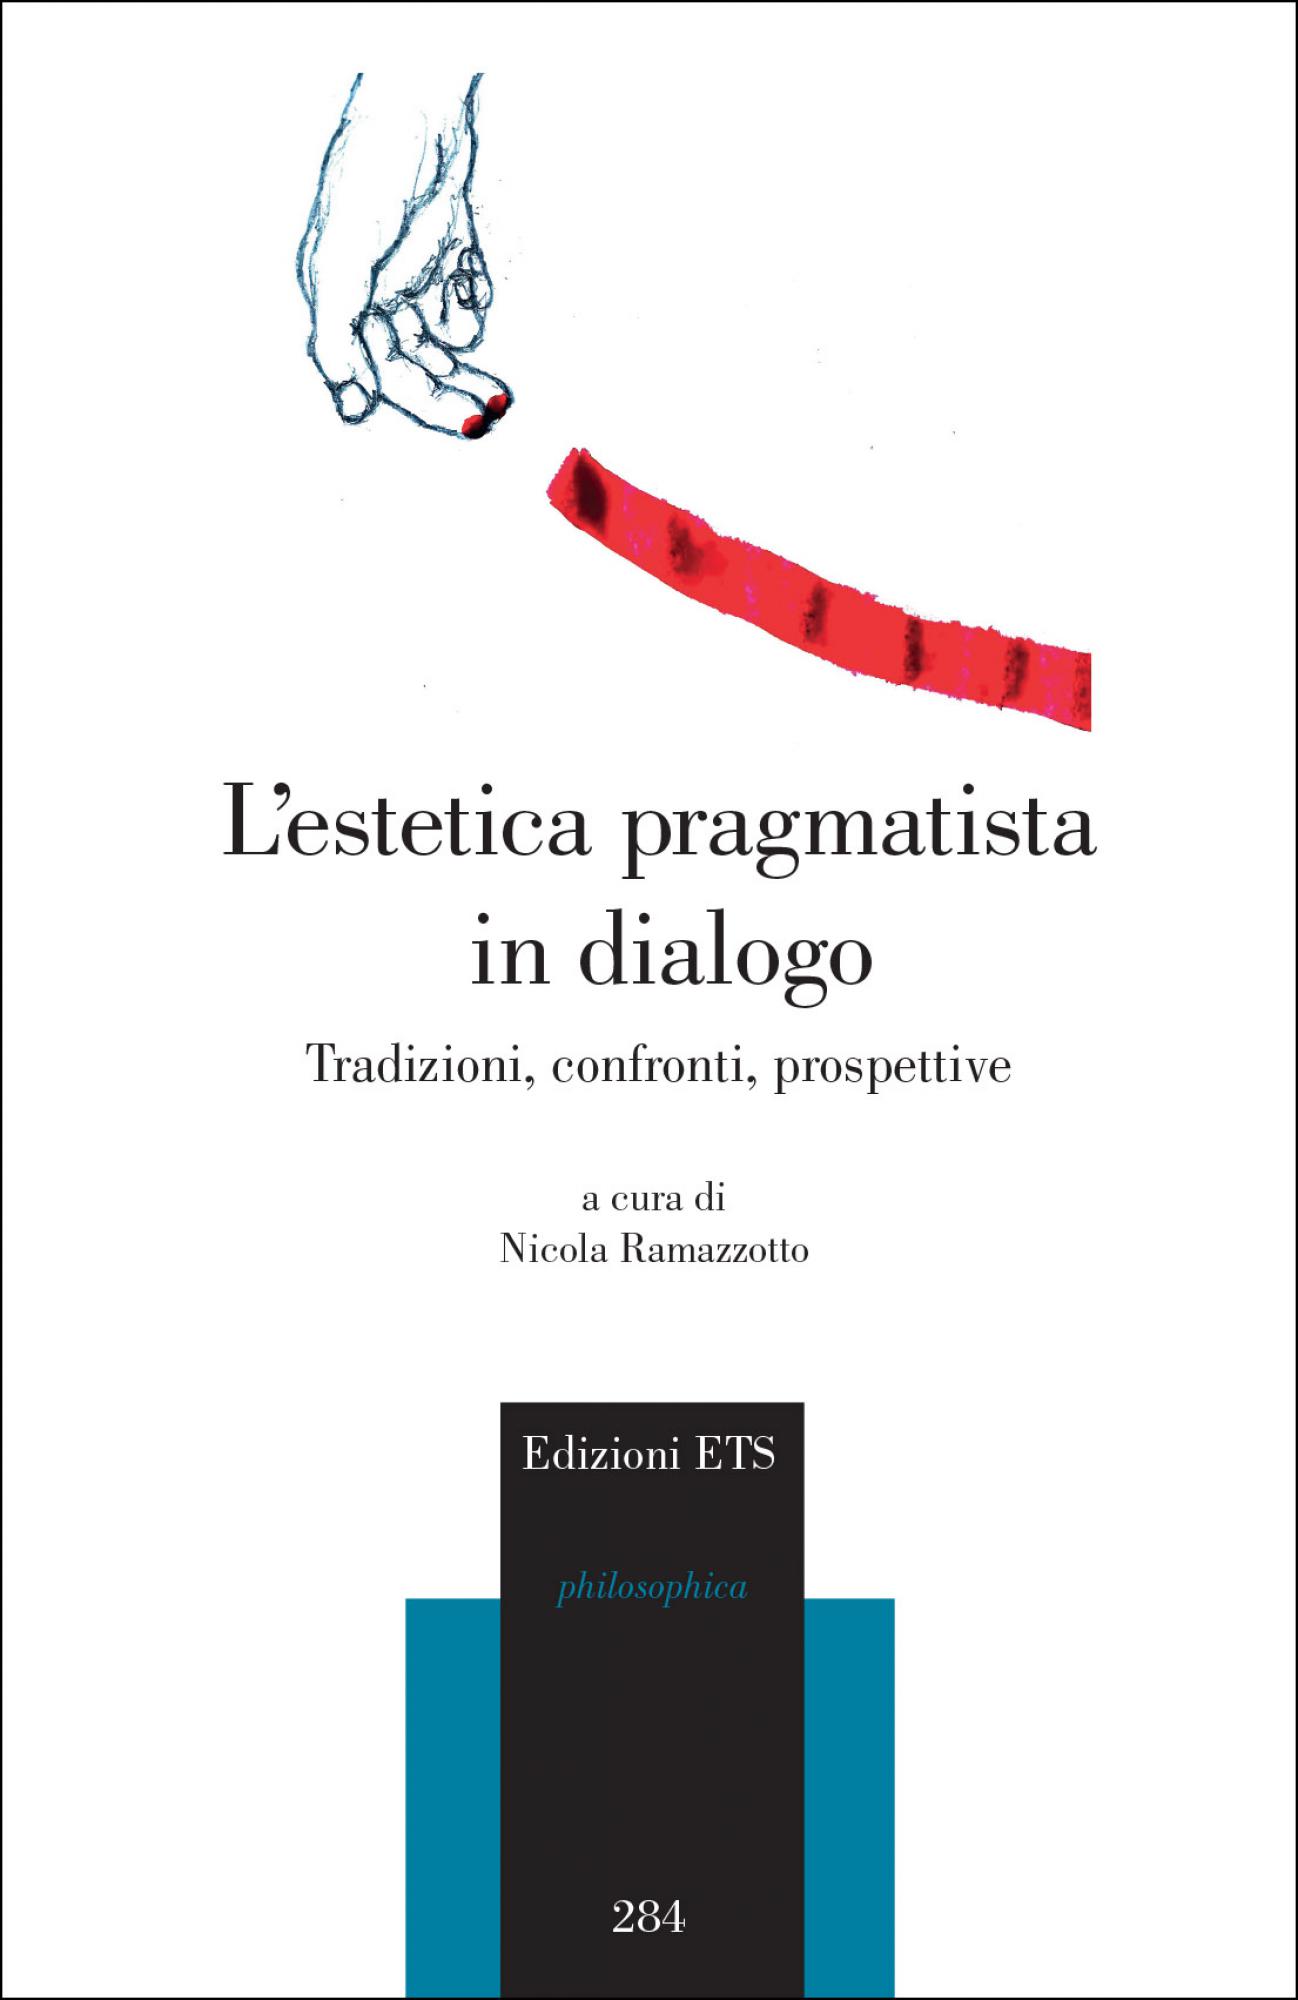 L'estetica pragmatista in dialogo.Tradizioni, confronti, prospettive